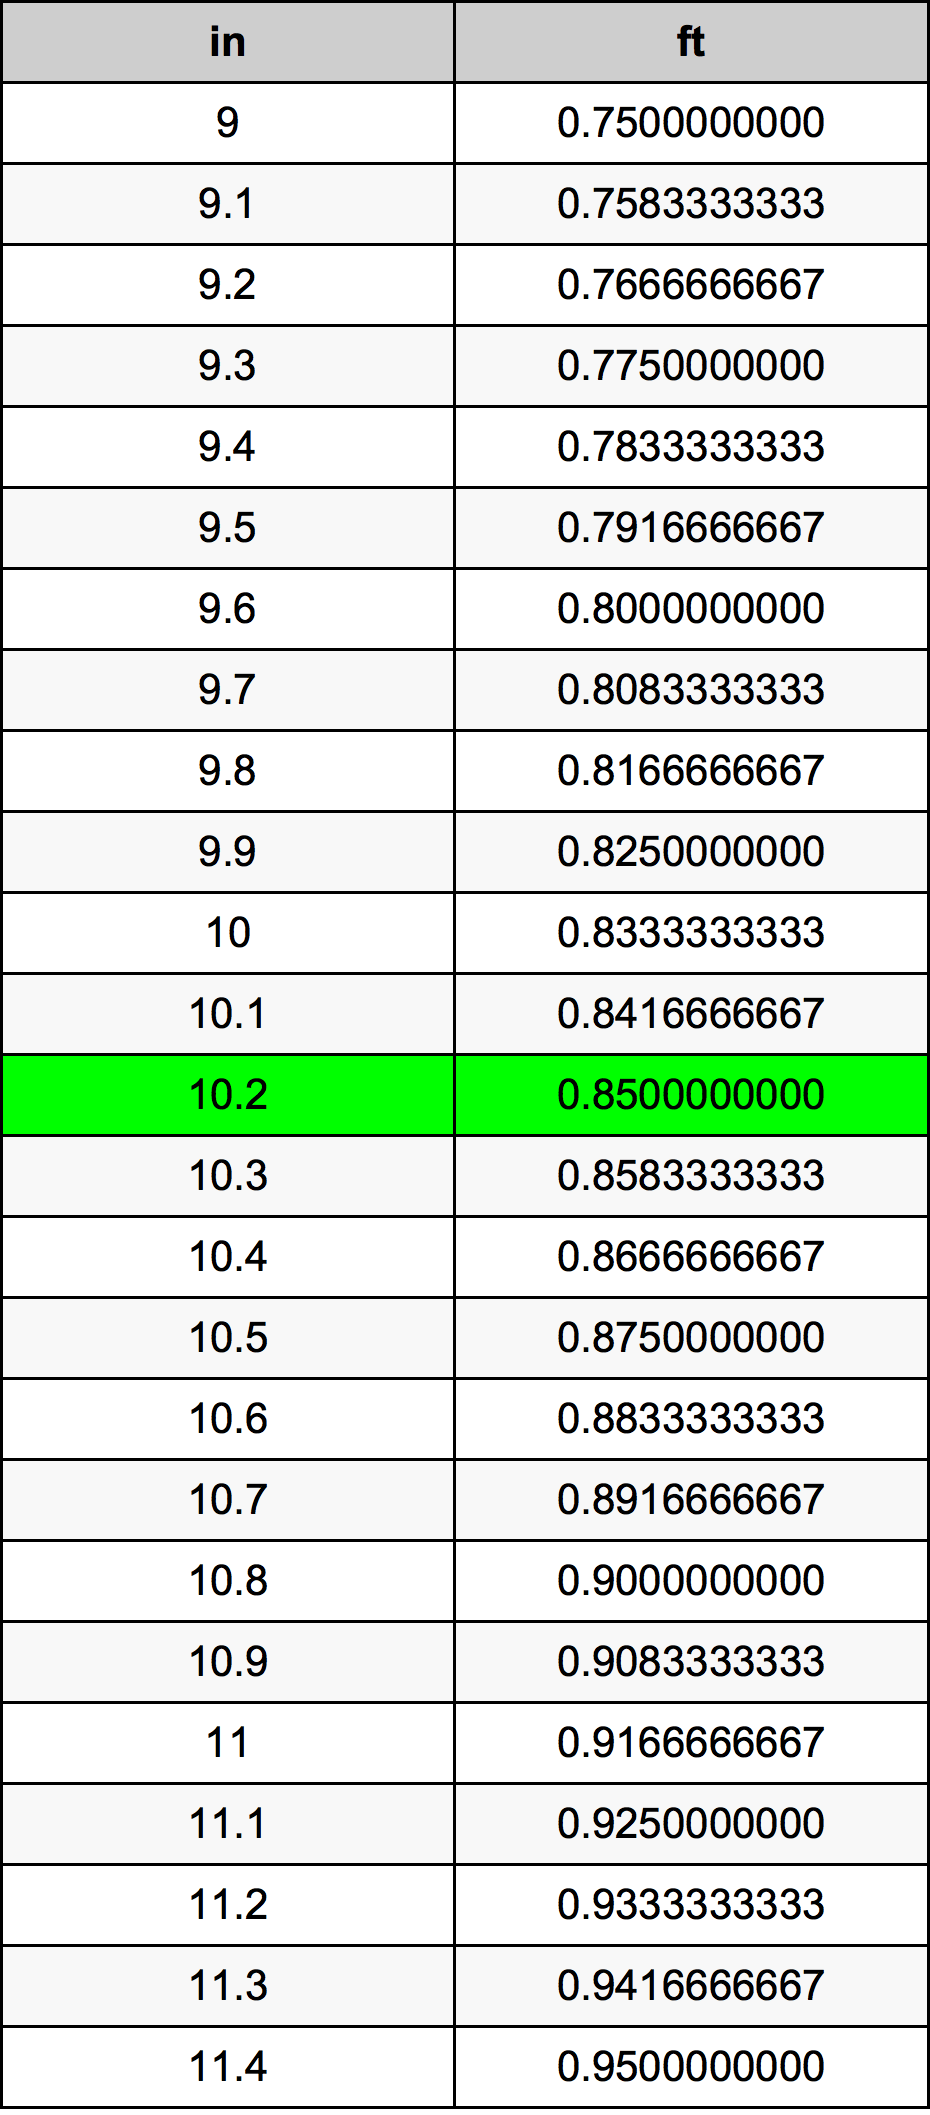 10.2 Pulzier konverżjoni tabella